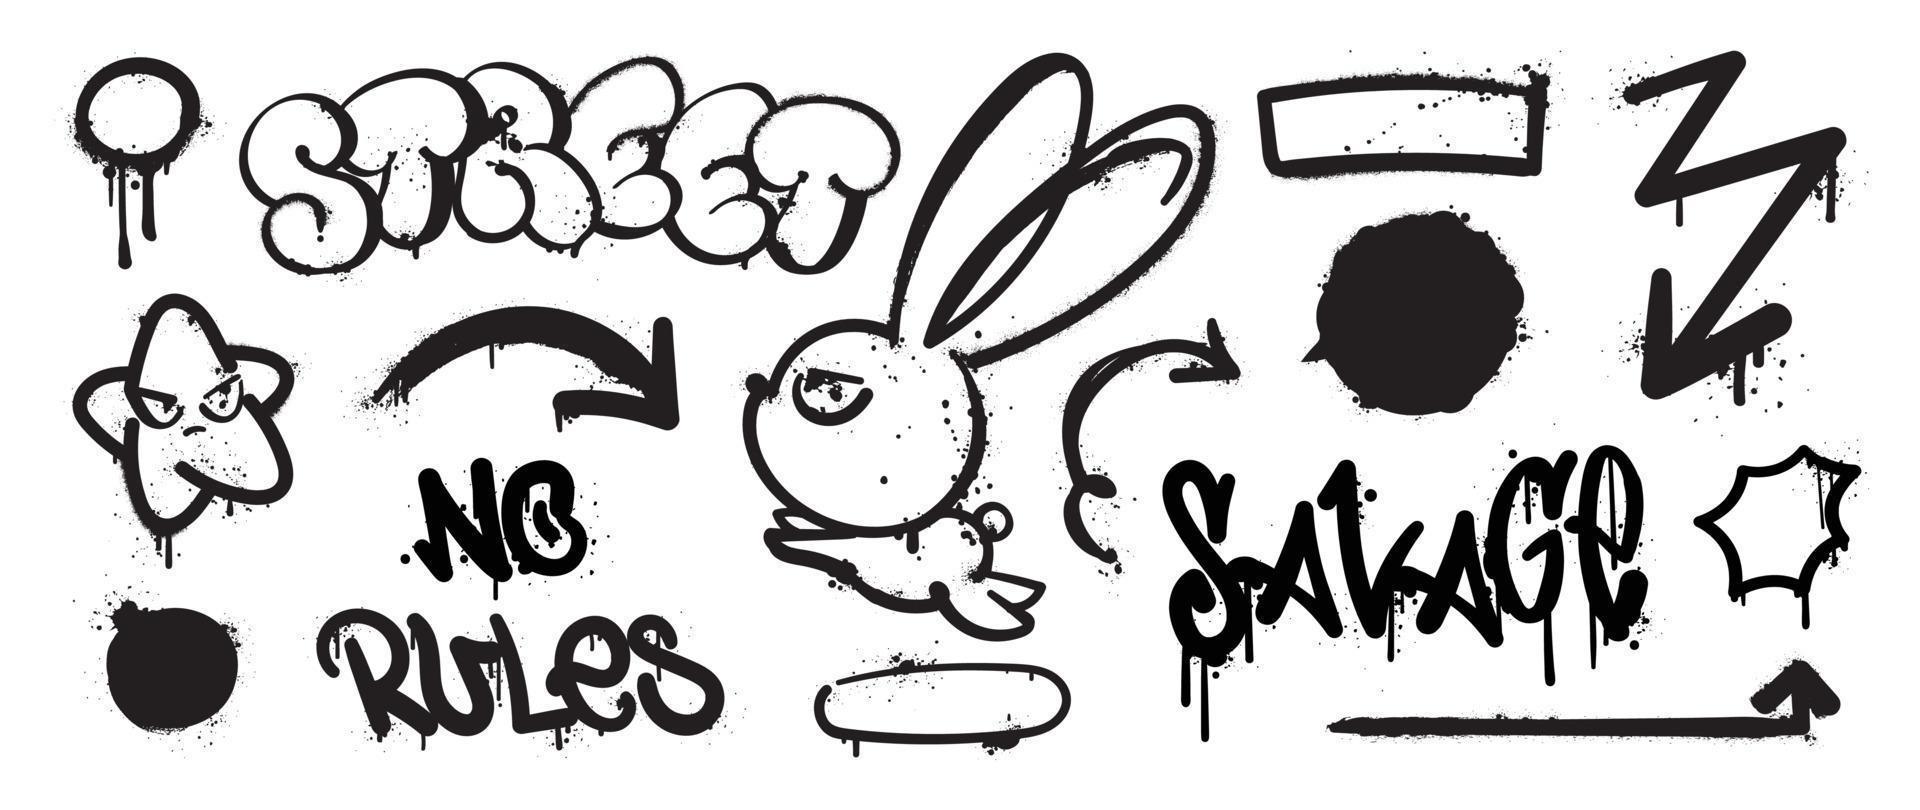 uppsättning av graffiti spray mönster. samling av svart symboler, pil, stjärna, kanin, text, bomba och stroke med spray textur. element på vit bakgrund för baner, dekoration, gata konst och annonser. vektor